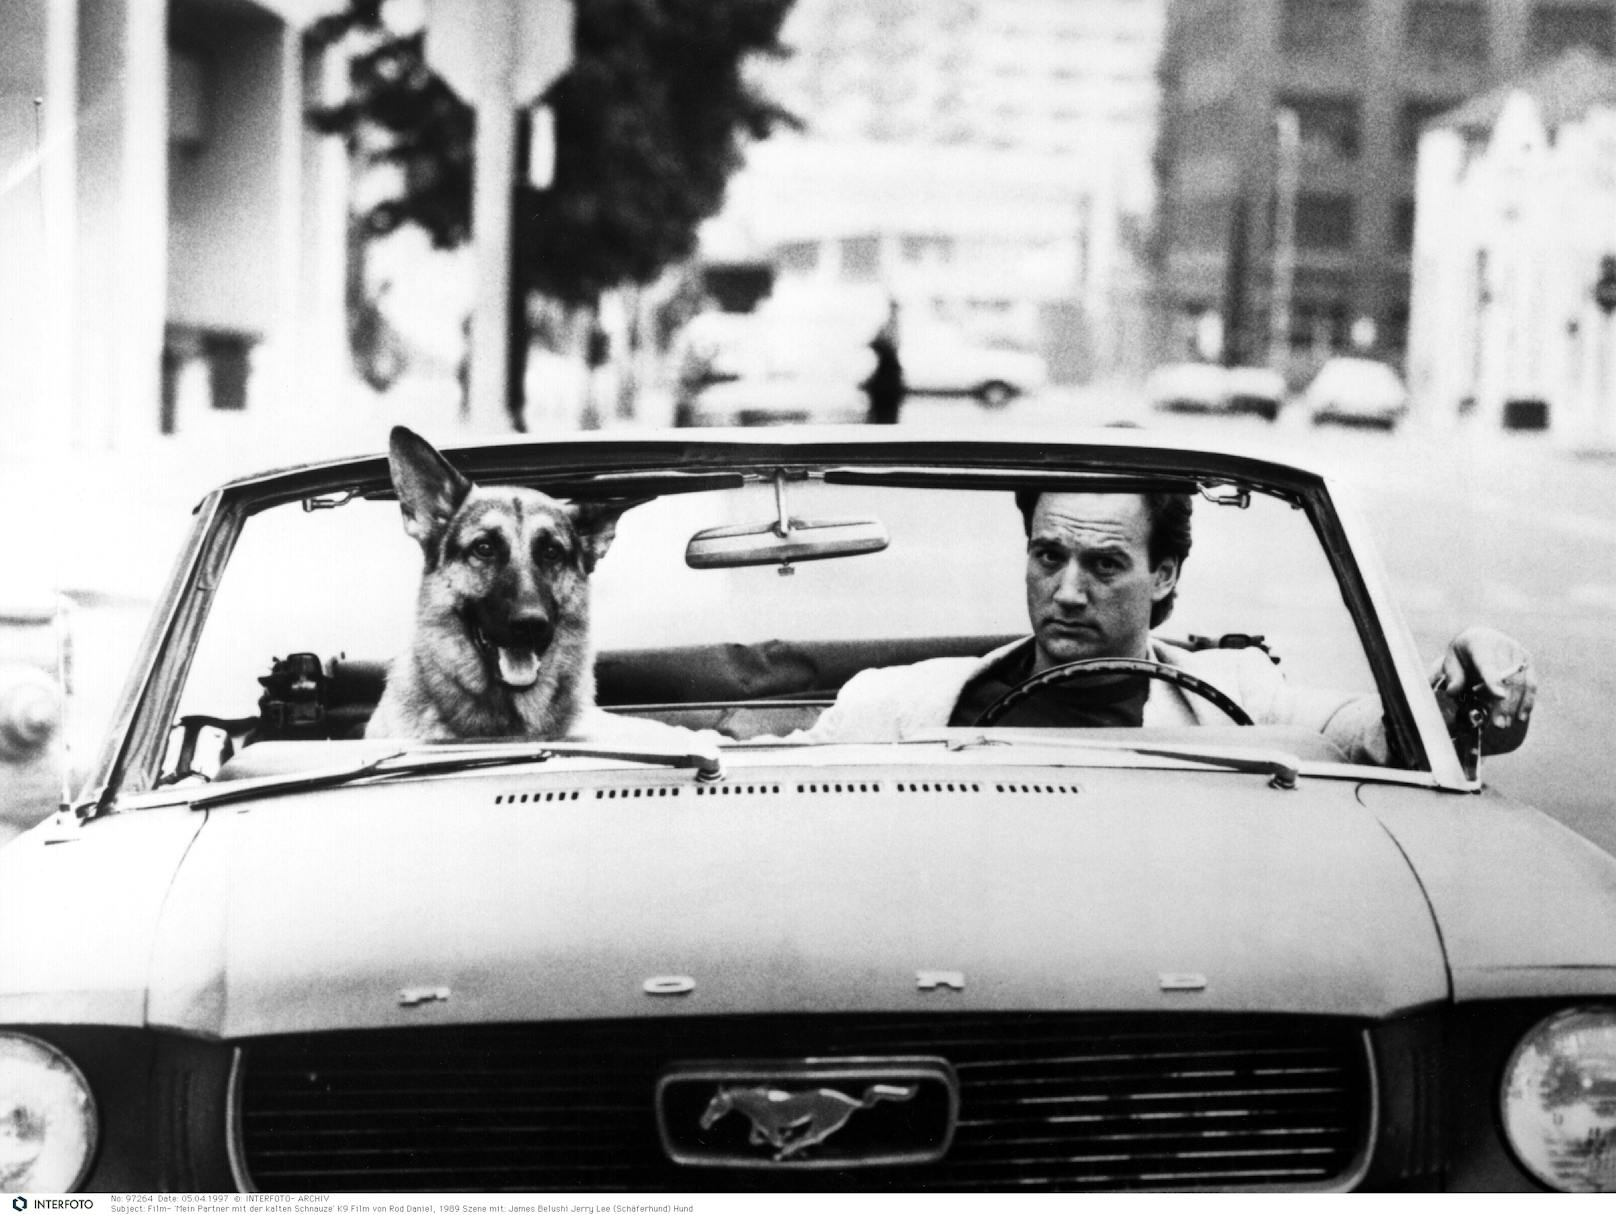 <strong>"JERRY-LEE"</strong>, der reinrassige deutsche Schäferhund aus dem Film: "Mein Partner mit der kalten Schnauze" war ein echter Kinoerfolg 1989, mit James Belushi in der Hauptrolle. Auch wenn sich das ungleiche Polizisten-Duo allerlei Gefahren aussetzen, kommt es dennoch zu einem Happy-End und es kann im Laufe des Filmes sehr oft herzlich gelacht werden. Ein Knüller, dieser Hund. <br>